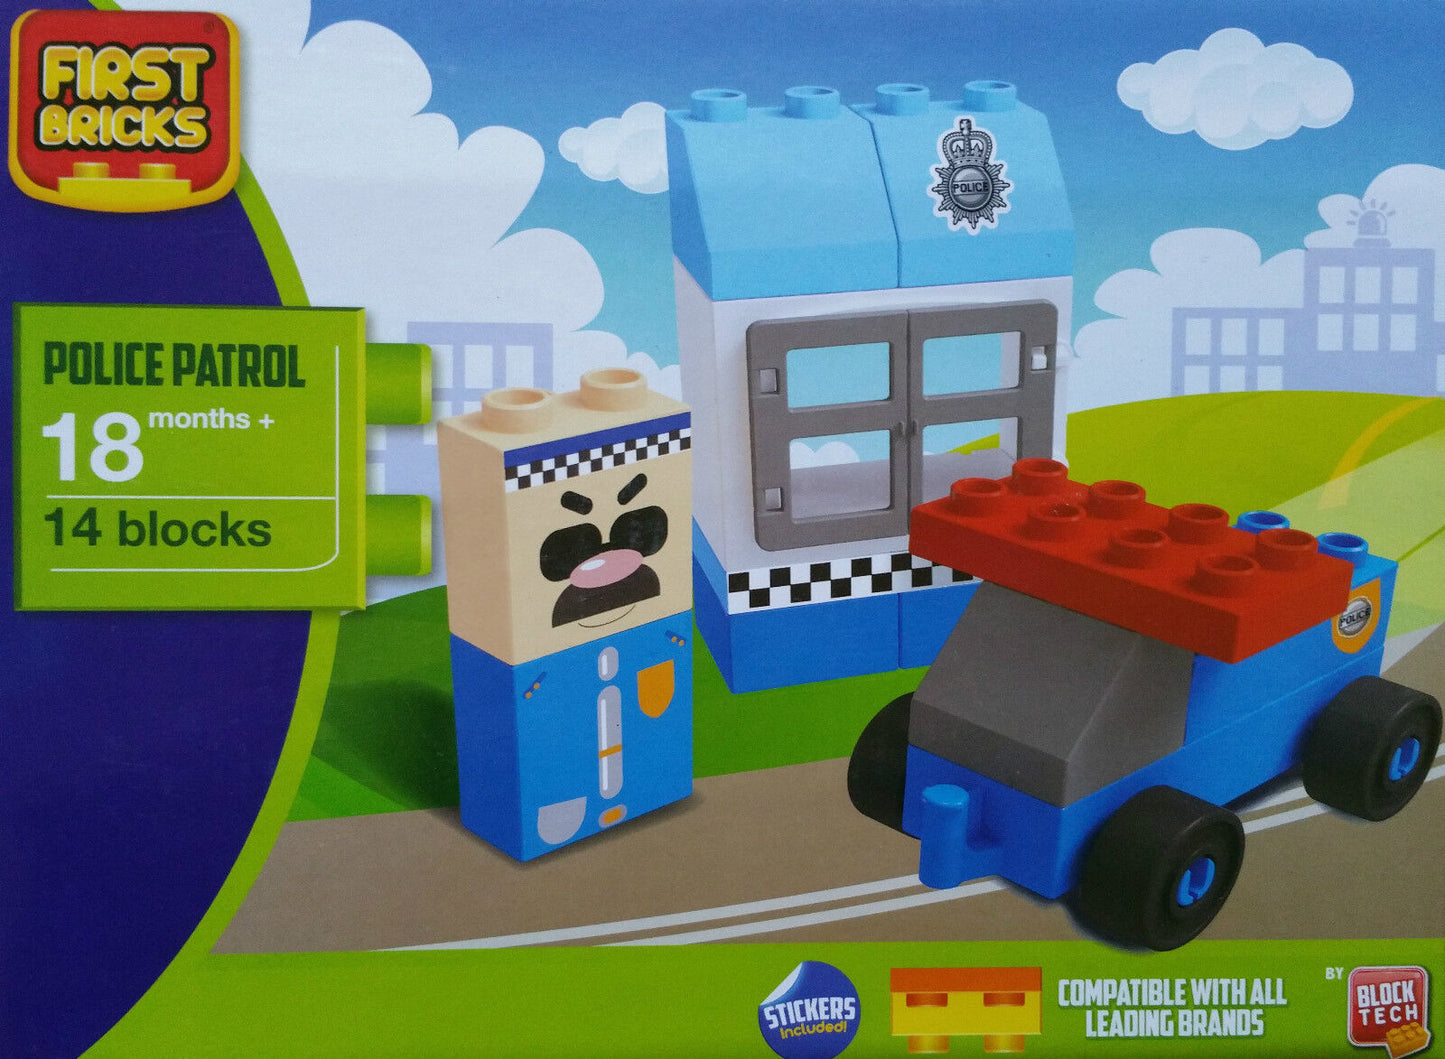 First Bricks Police Patrol építőkocka szett